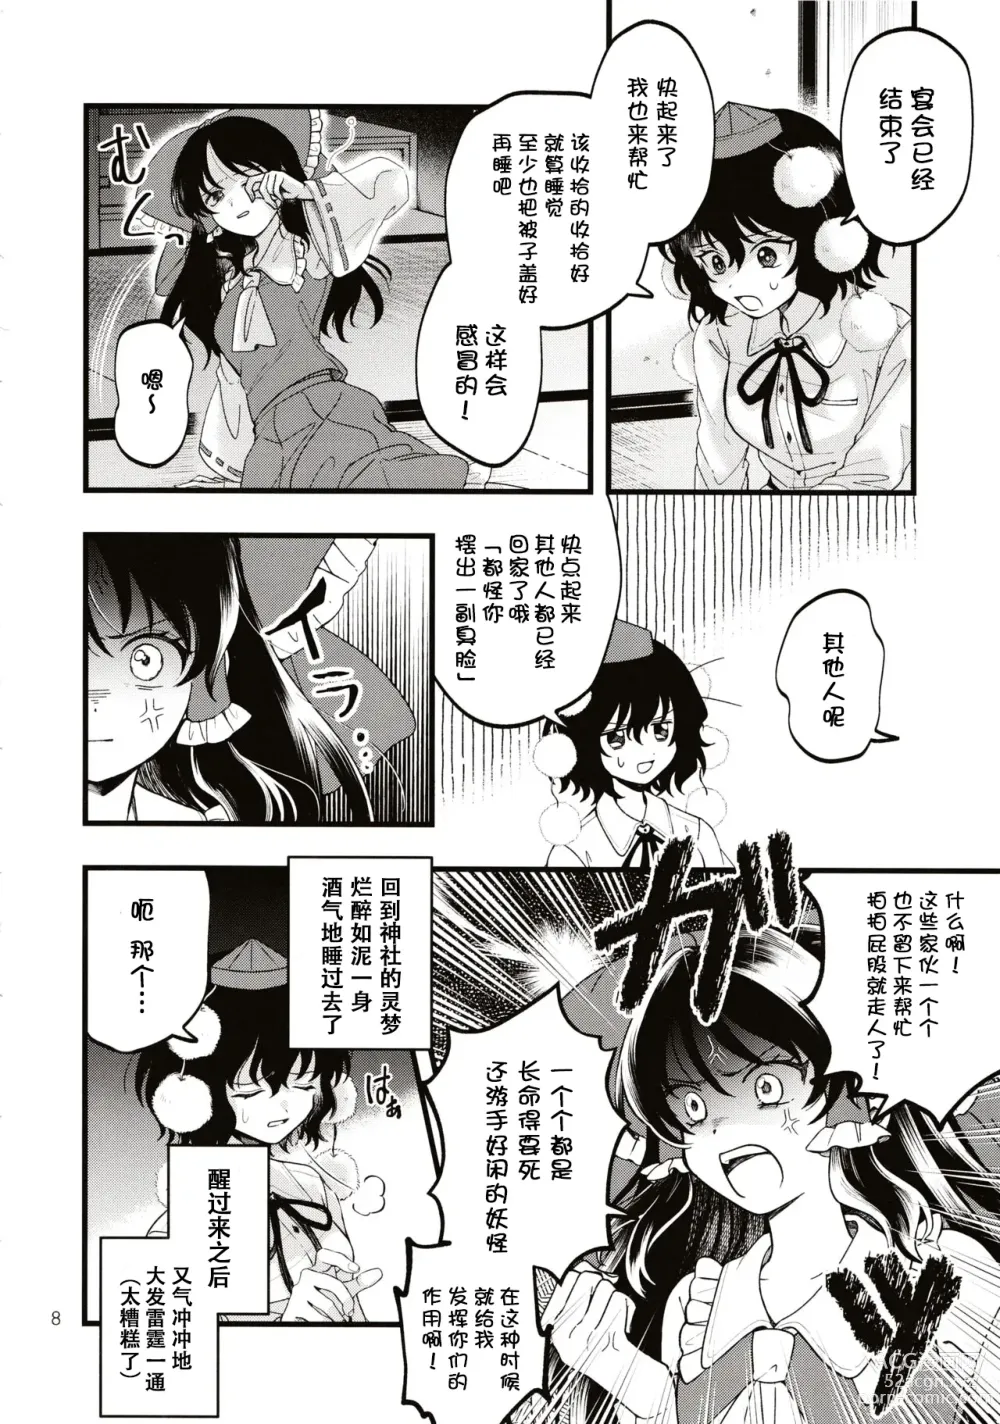 Page 7 of doujinshi Rubeus no Kankai